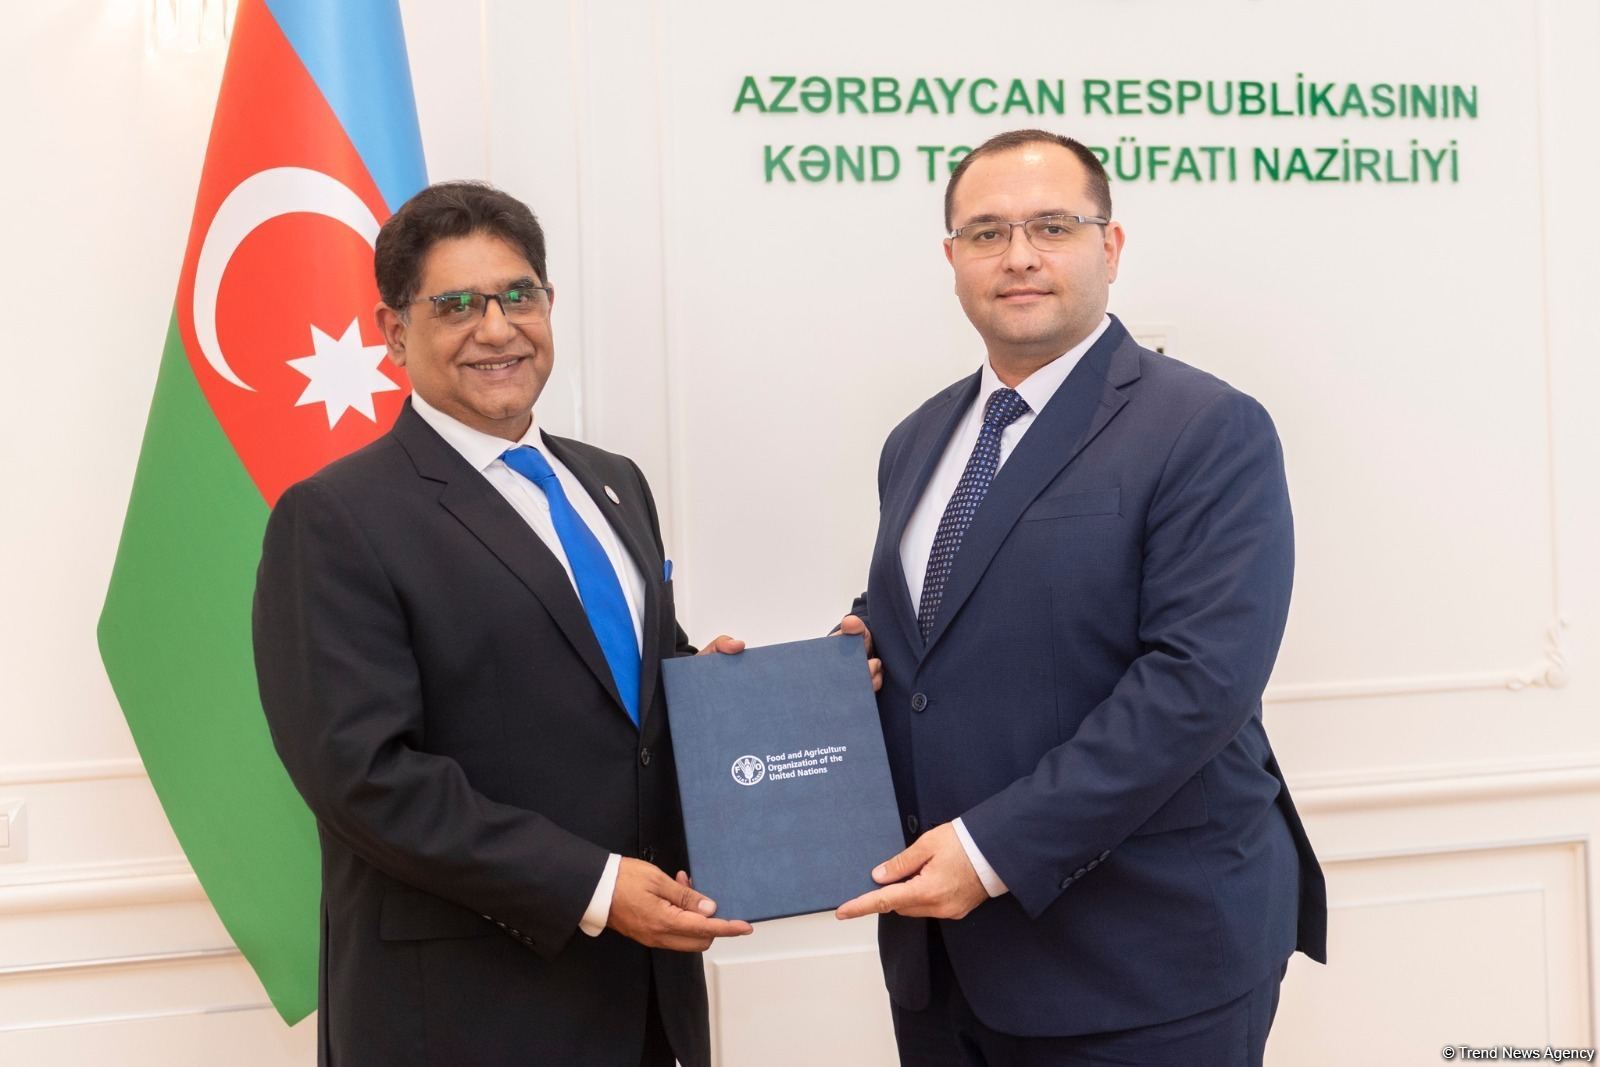 Azərbaycanla yeni tərəfdaşlıq proqramı uğurlu əməkdaşlığa yol açacaq - FAO nümayəndəsi (MÜSAHİBƏ)